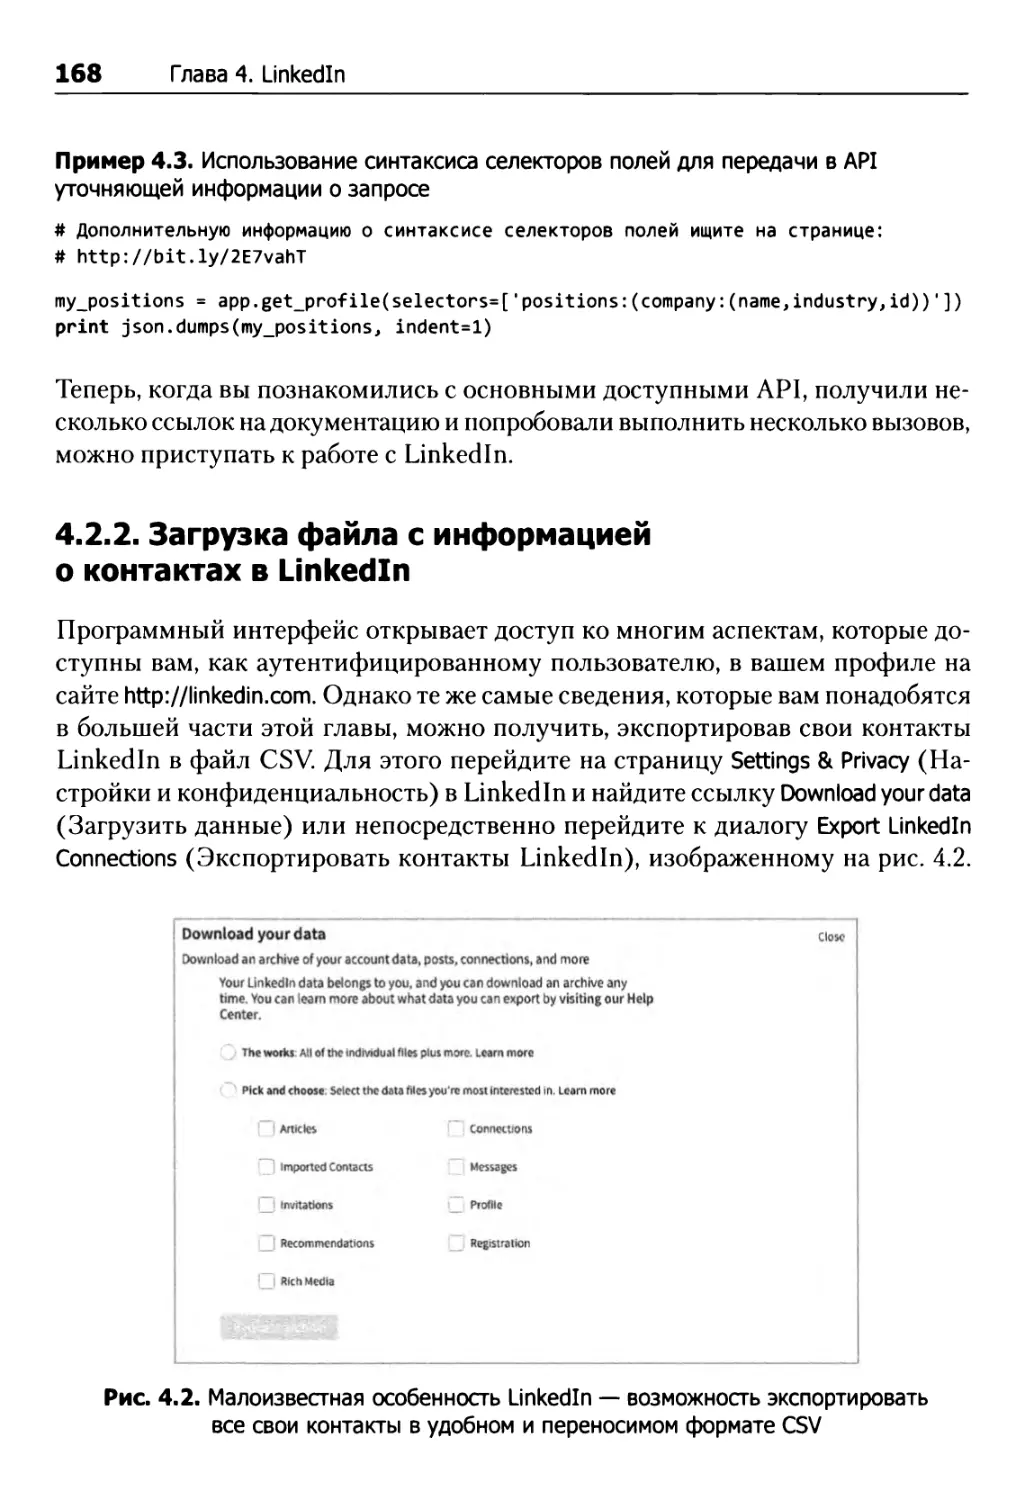 4.2.2. Загрузка файла с информацией о контактах в LinkedIn